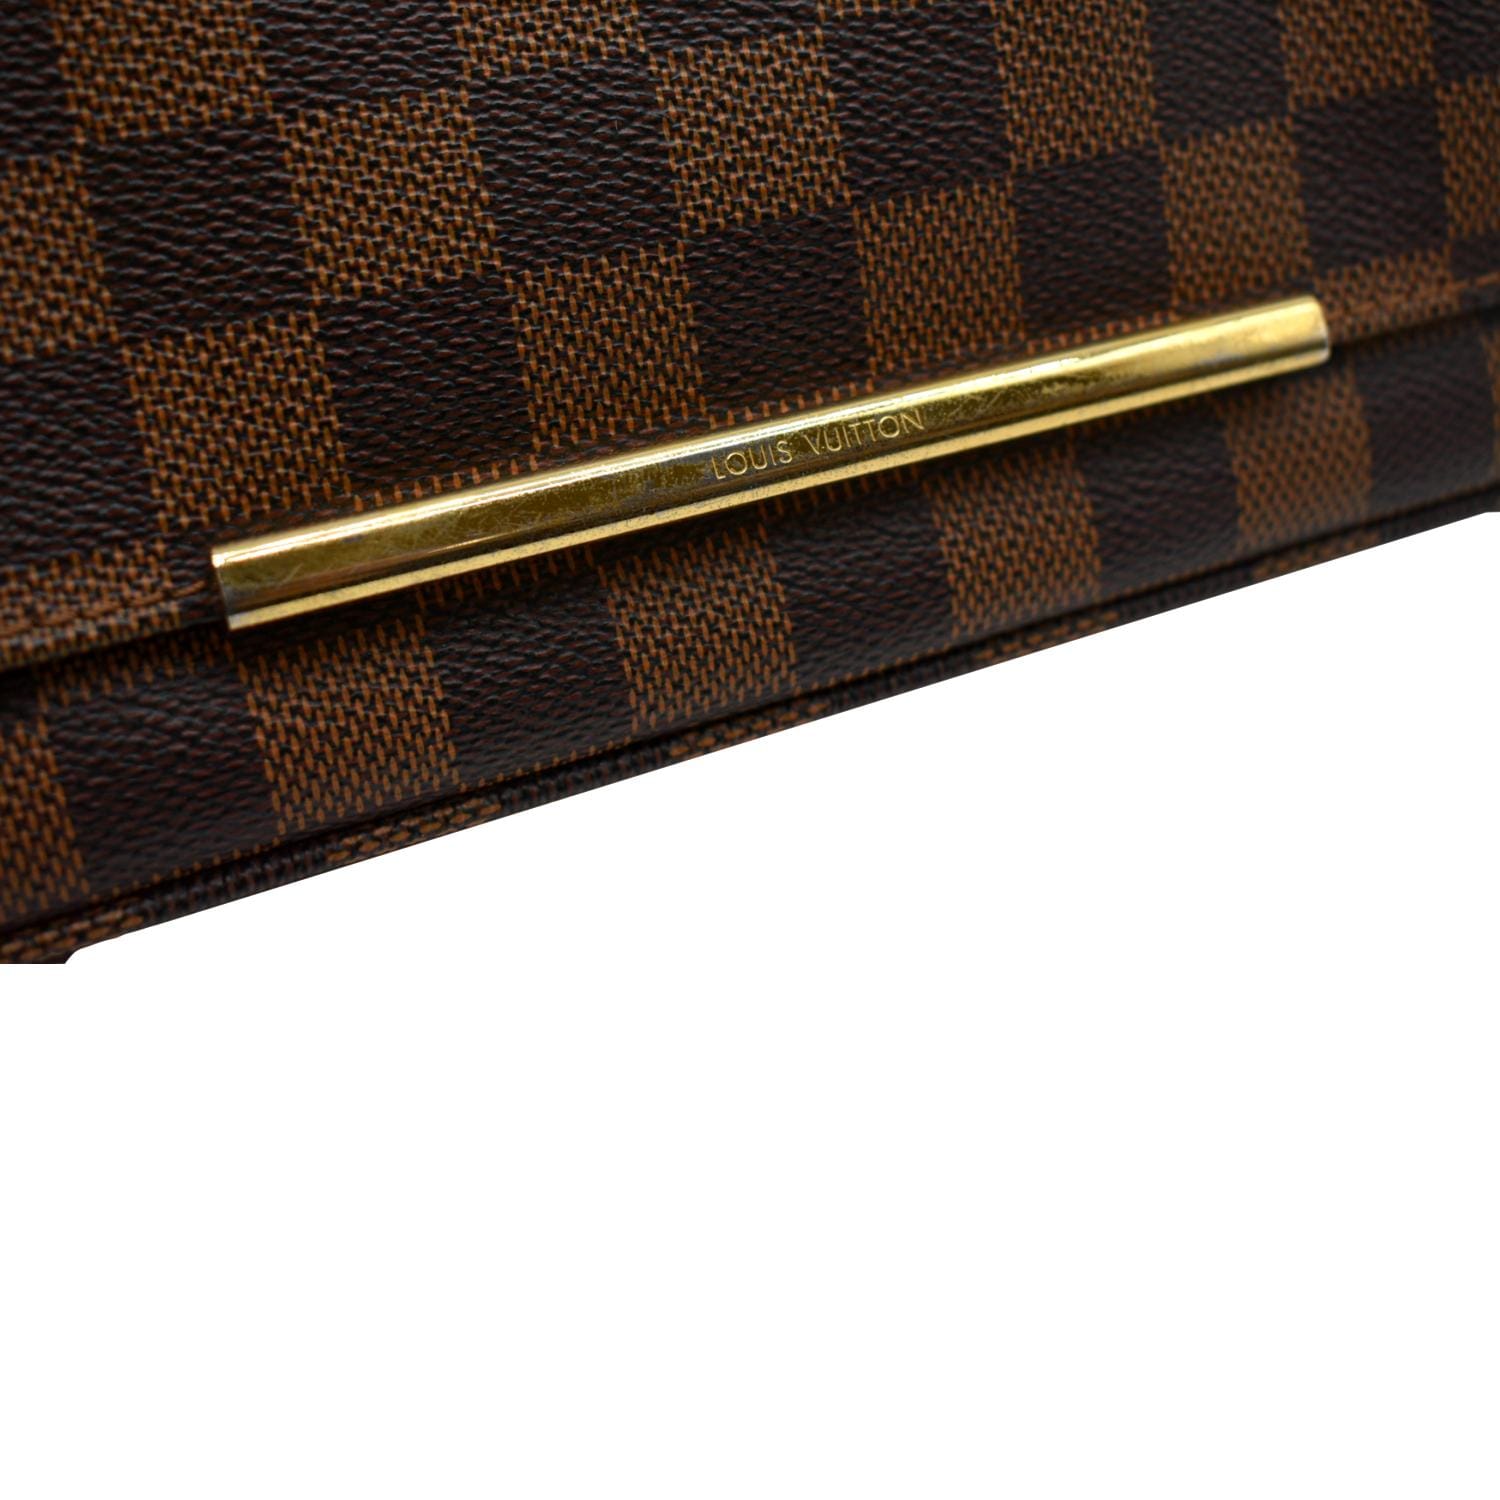 Hoxton linen crossbody bag Louis Vuitton Brown in Linen - 28243757